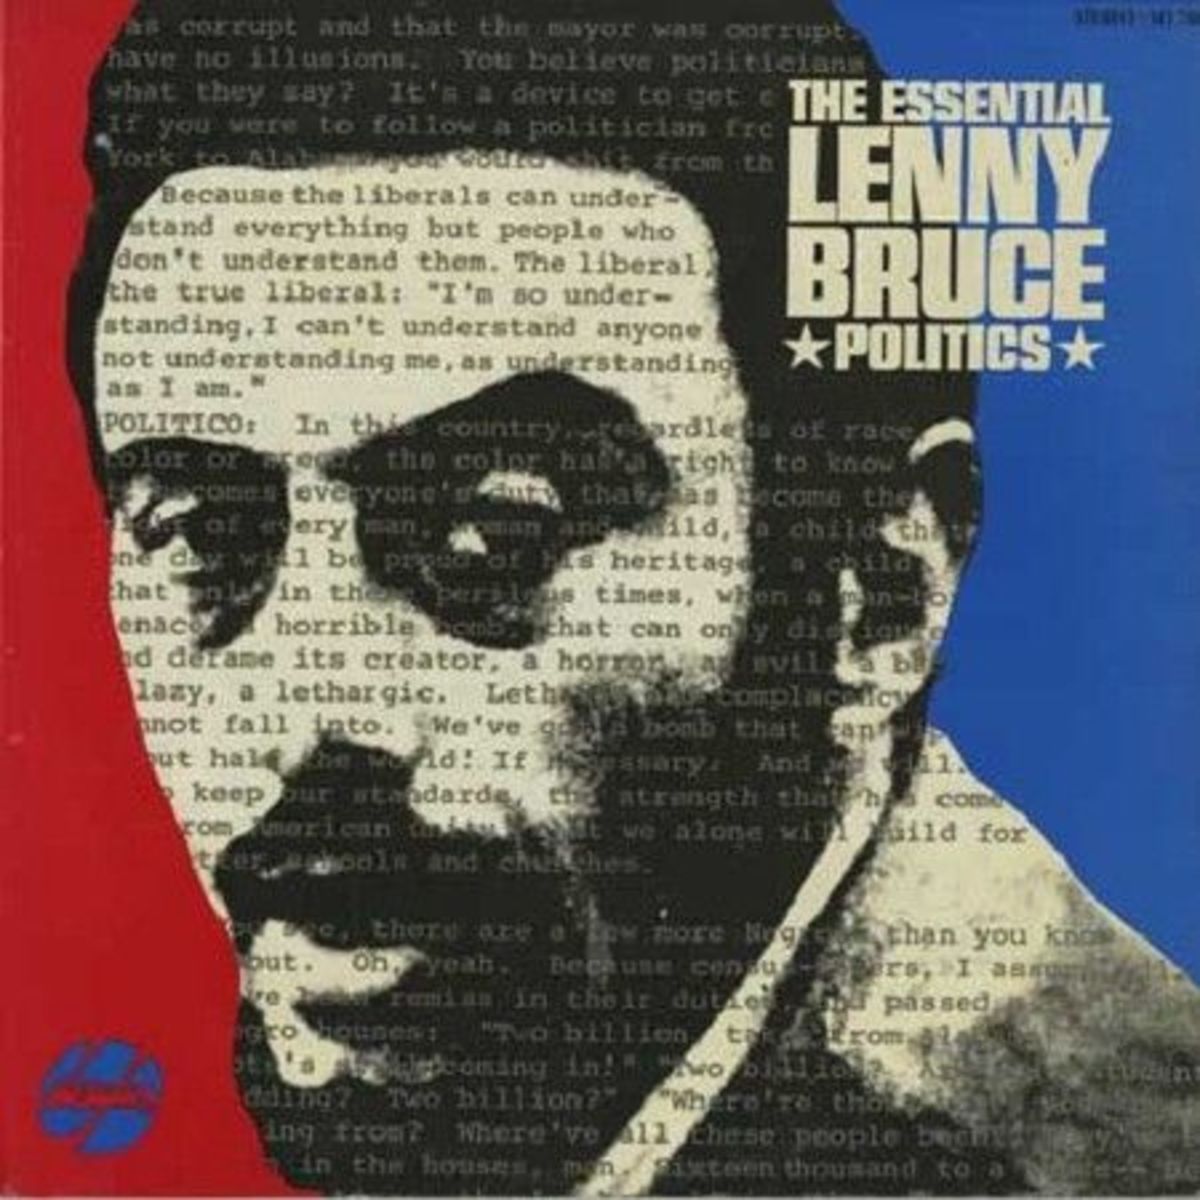 Lenny Bruce "The Essential Lenny Bruce Politics" Douglas Records 788 12" LP Vinyl Record, US Pressing (1965)